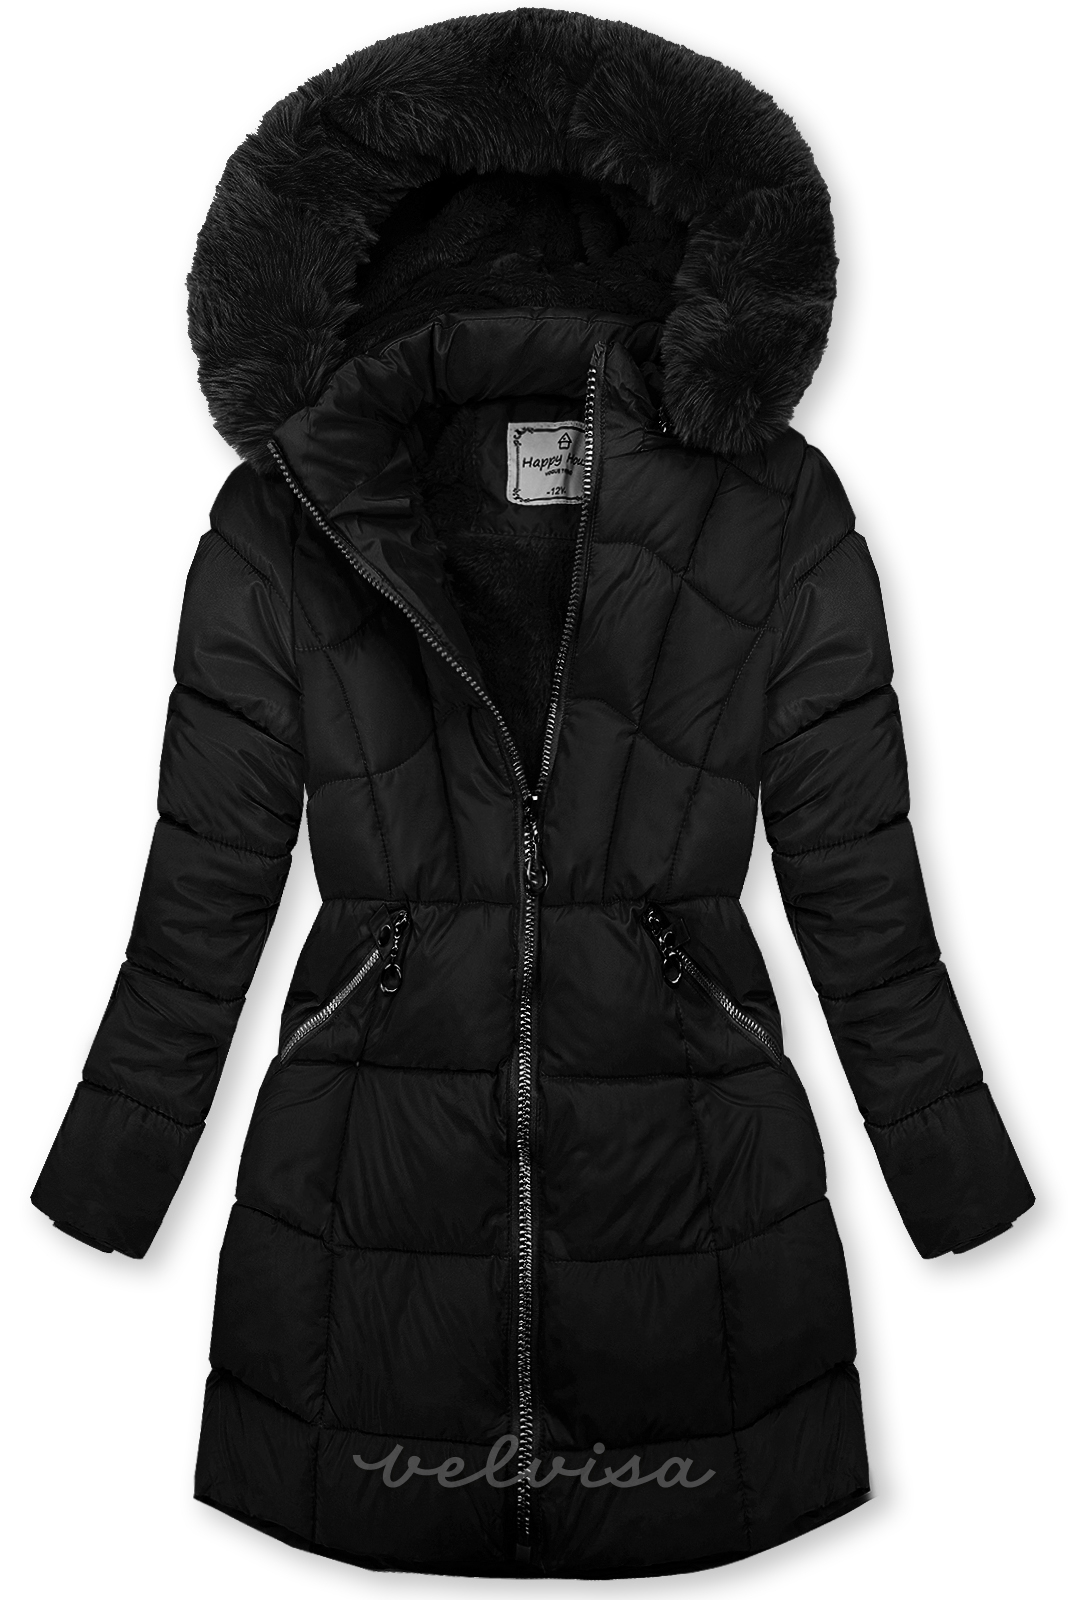 Crna zimska jakna s rukavicama